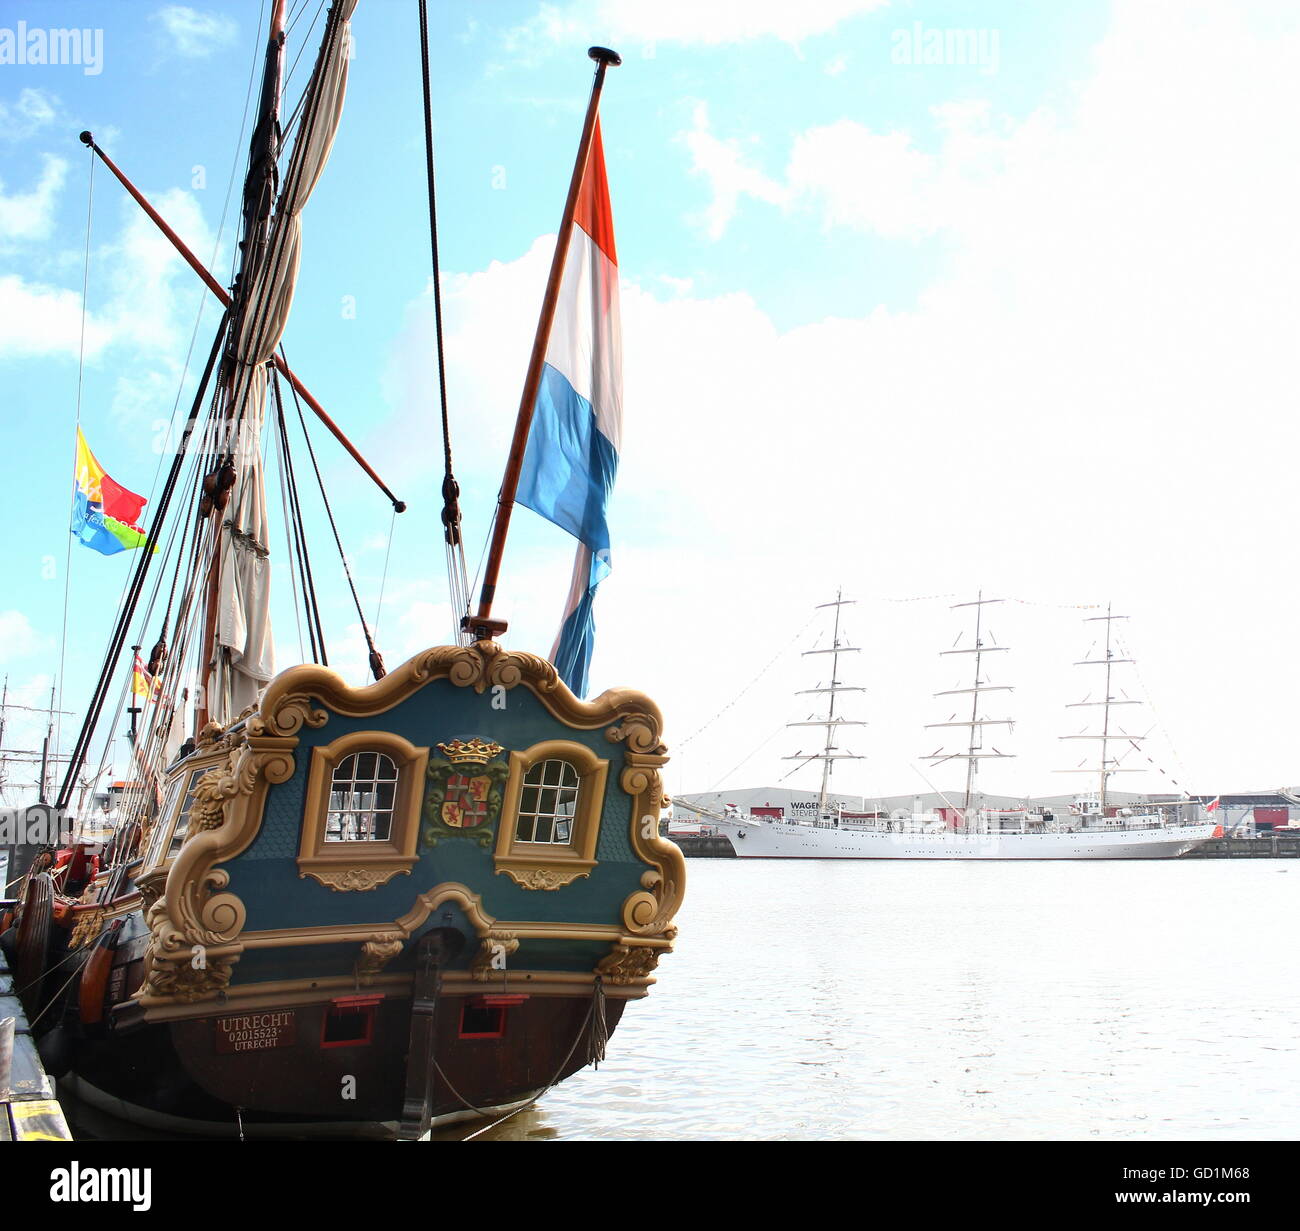 Tatenjacht "Utrecht". Réplique du 18e siècle Dutch sailing ship à Delfsail 2016. Grand voilier polonais Dar Młodzieży en arrière-plan Banque D'Images